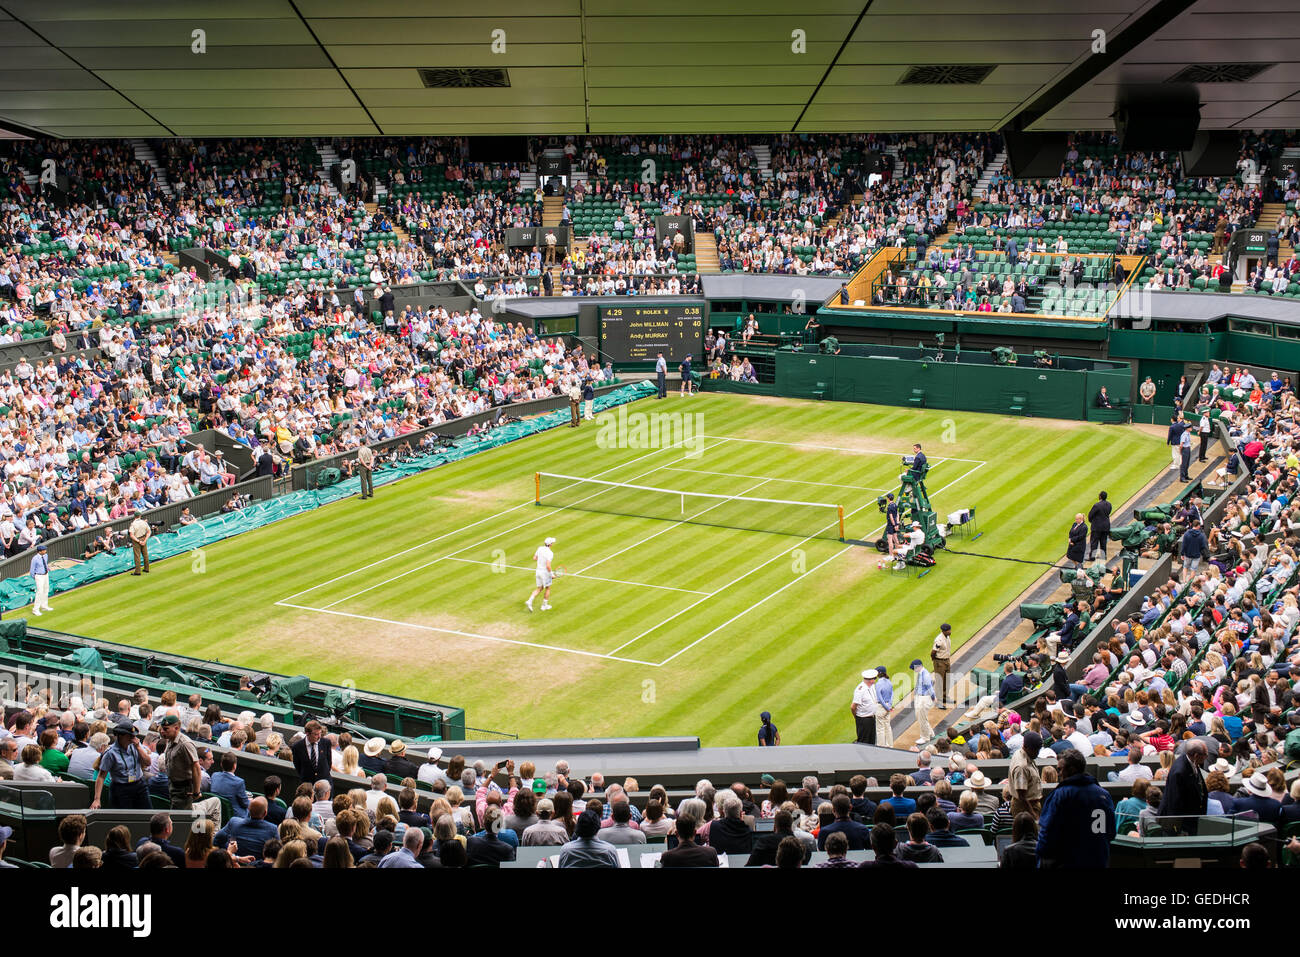 Vue sur le Court Central plein de spectateurs un match à Wimbledon All England Lawn Tennis Club Championships. Wimbledon. Banque D'Images